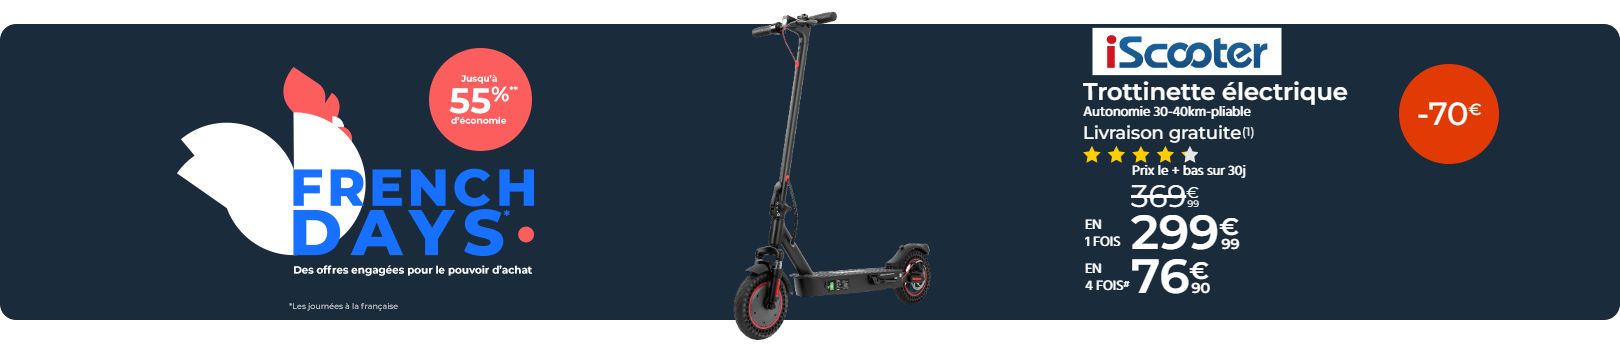 FD Trottinette électrique Iscooter